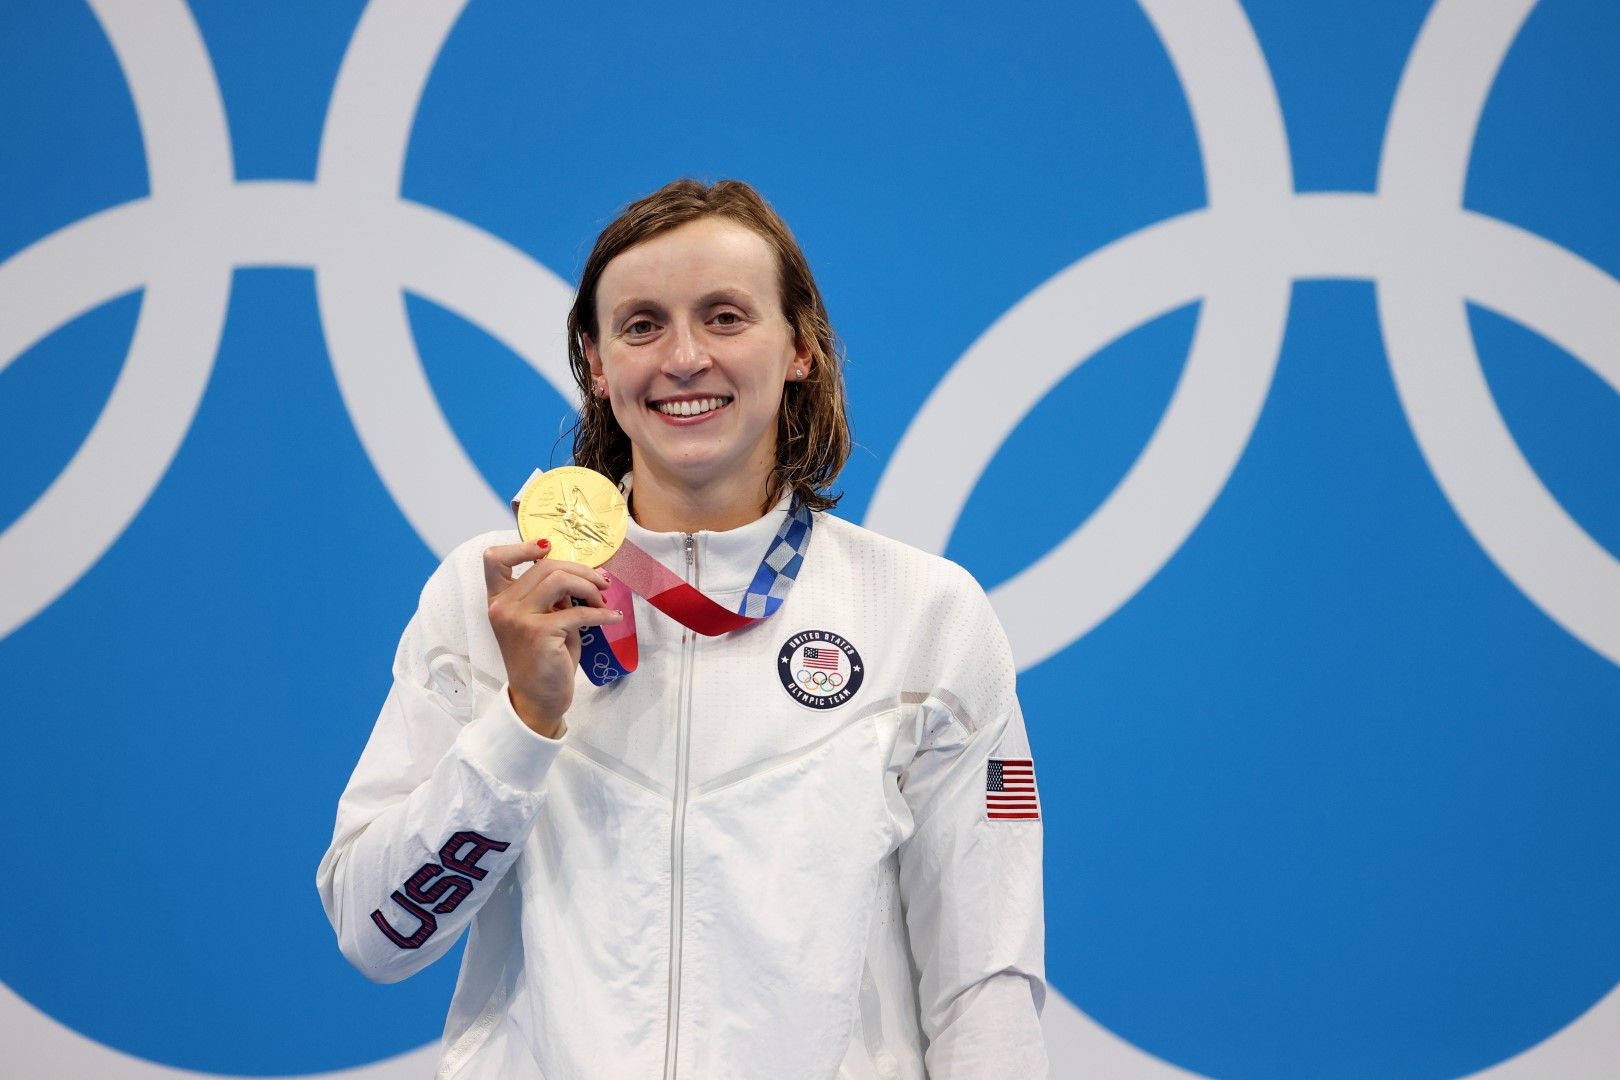 Вече утвърдената звезда Кейти Ледецки също взе четири медала, но само два златни